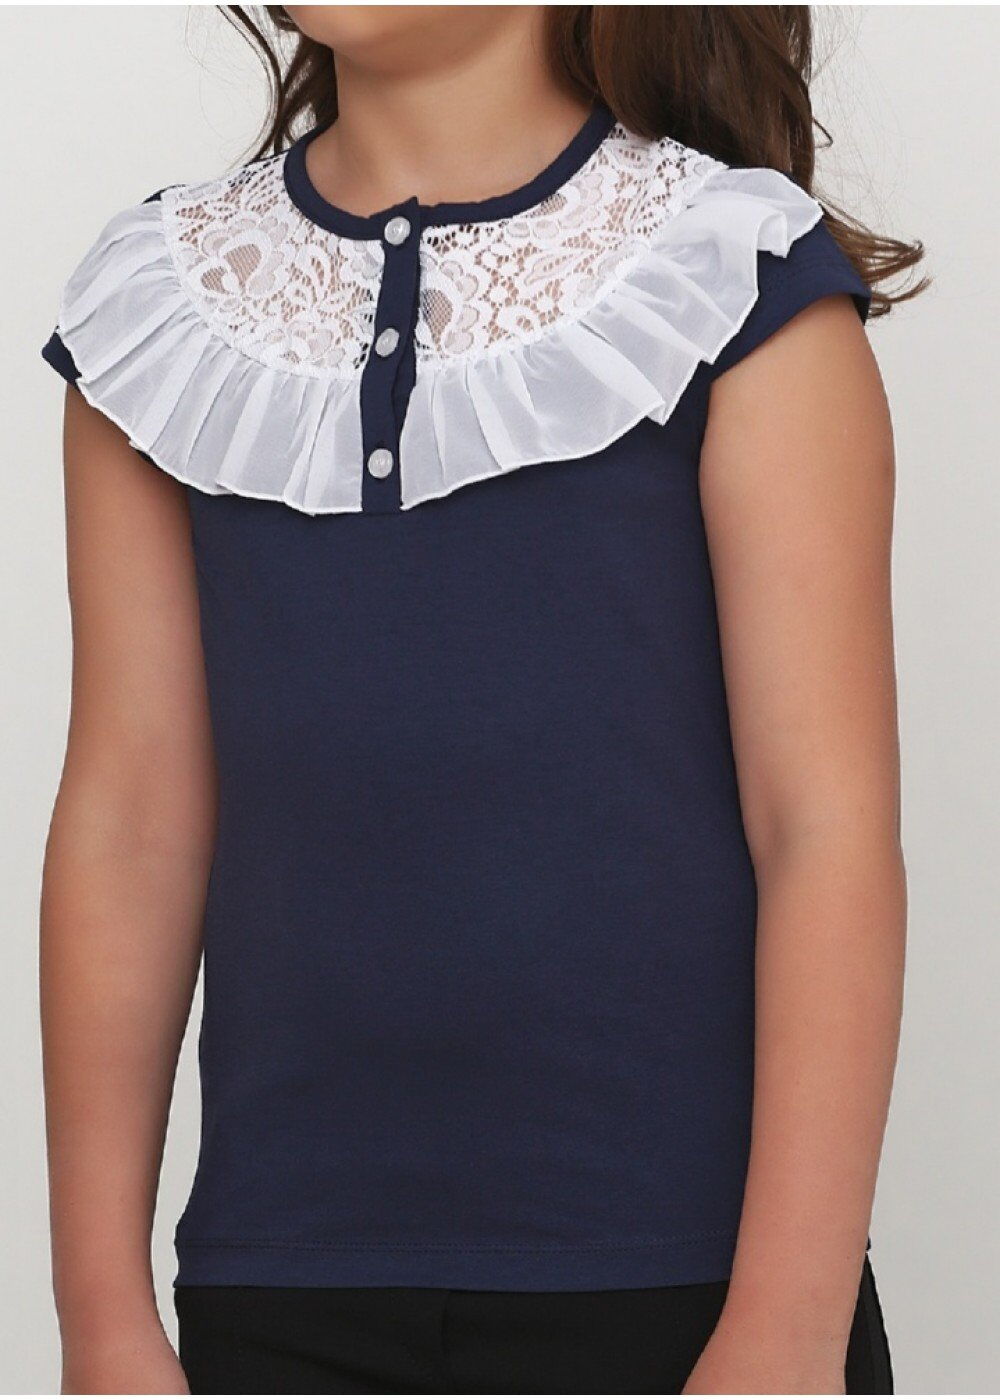 Трикотажная блузка для девочки Vidoli синяя 19598 - размеры